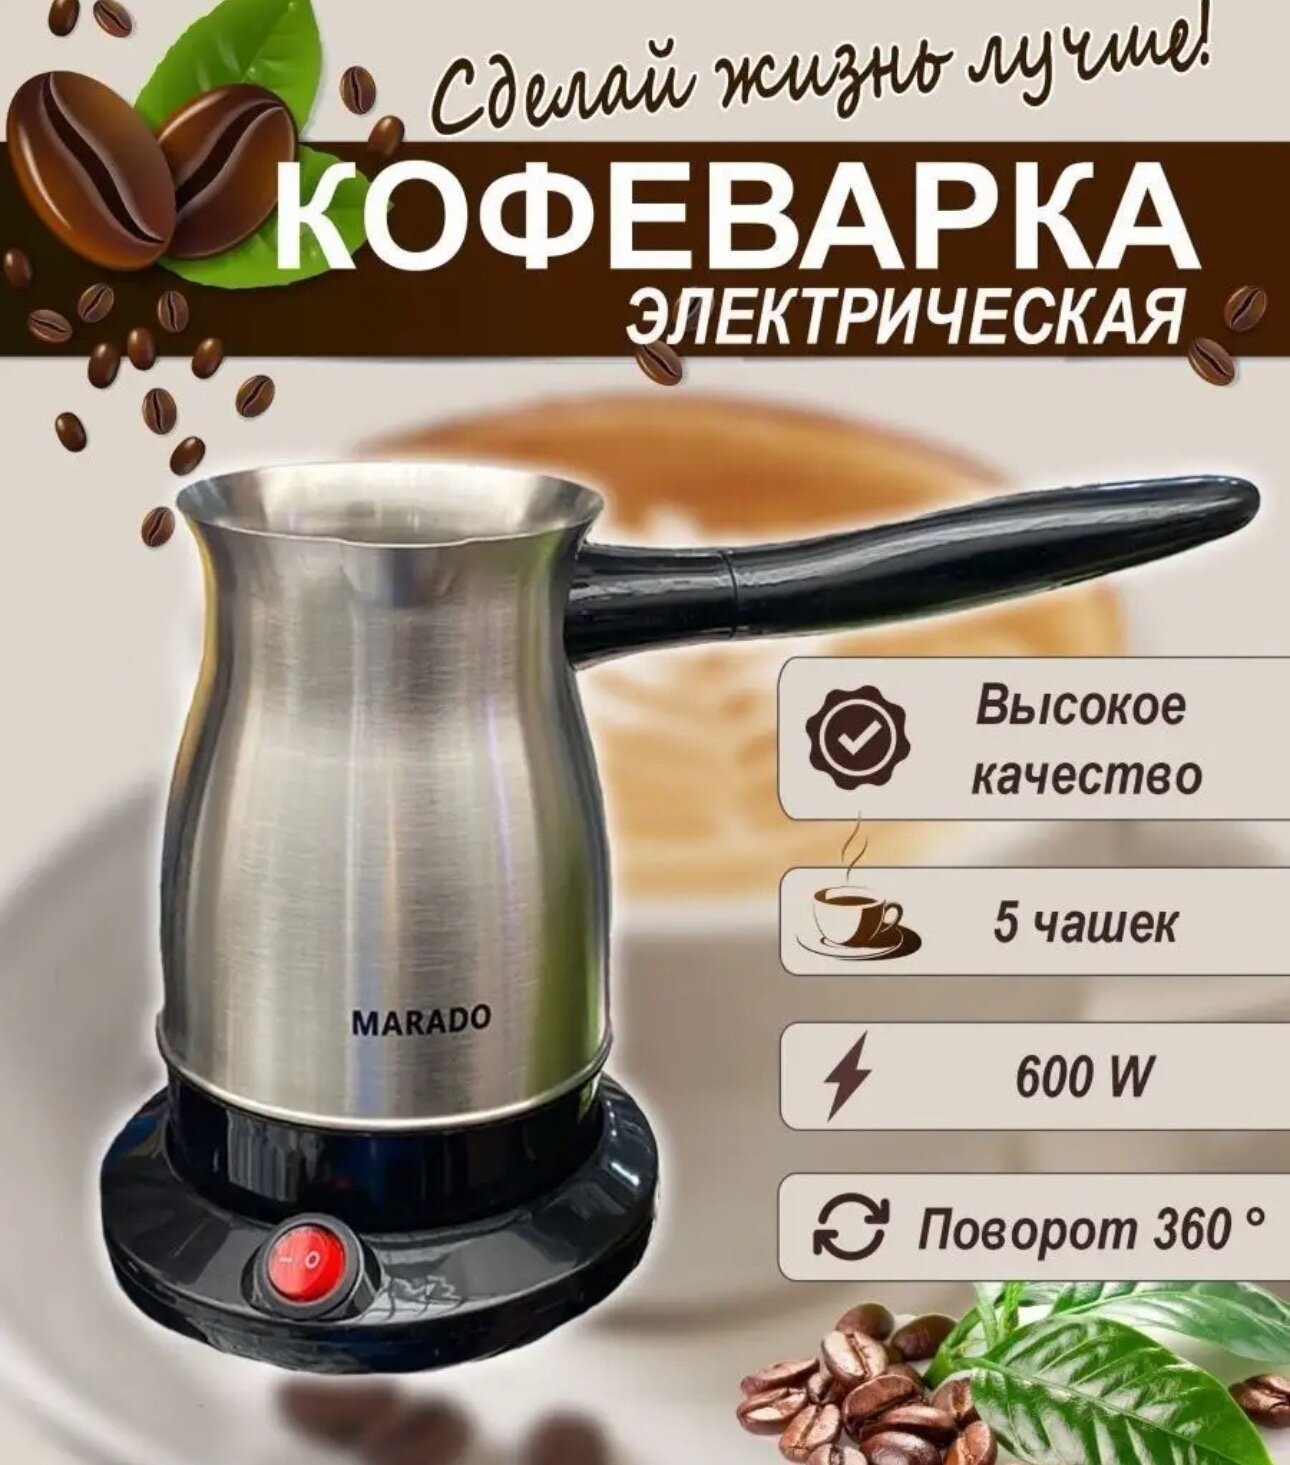 Электрическая кофеварка, турка